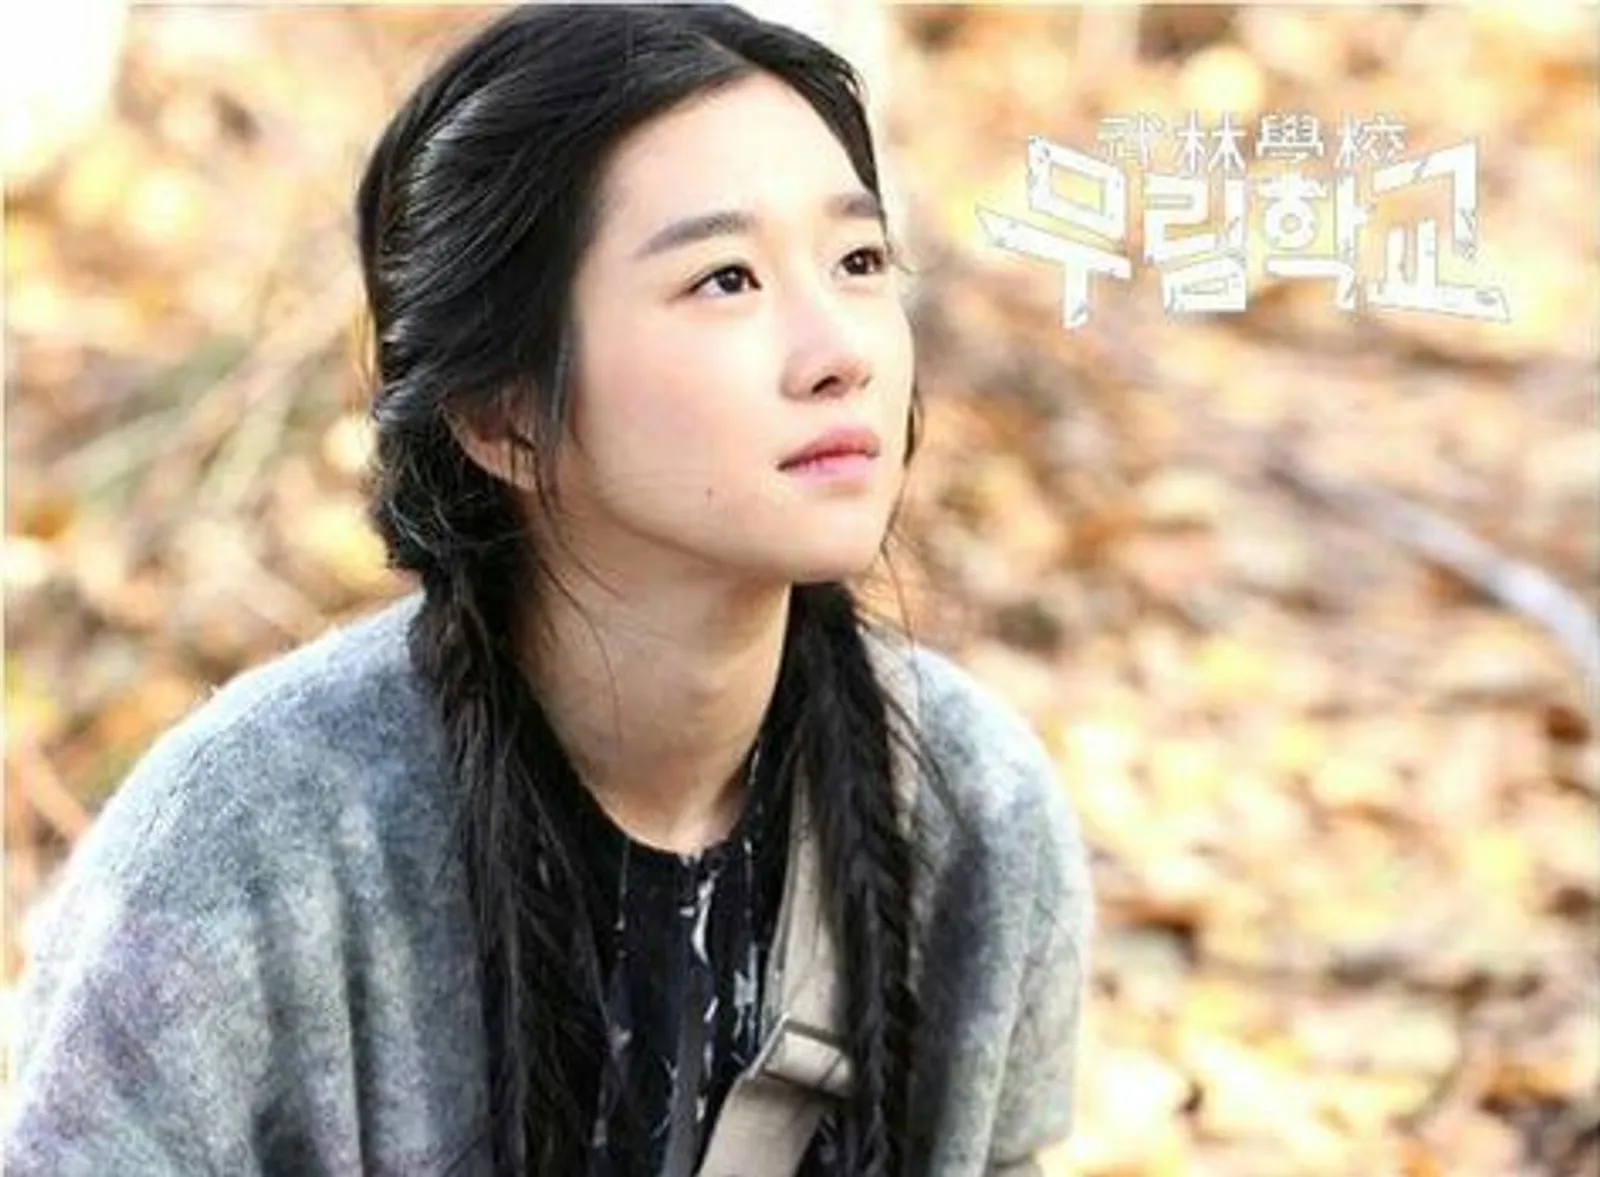 Sociopath hingga Anggota Sekte, Inilah 5 Karakter Seo Ye Ji di KDrama